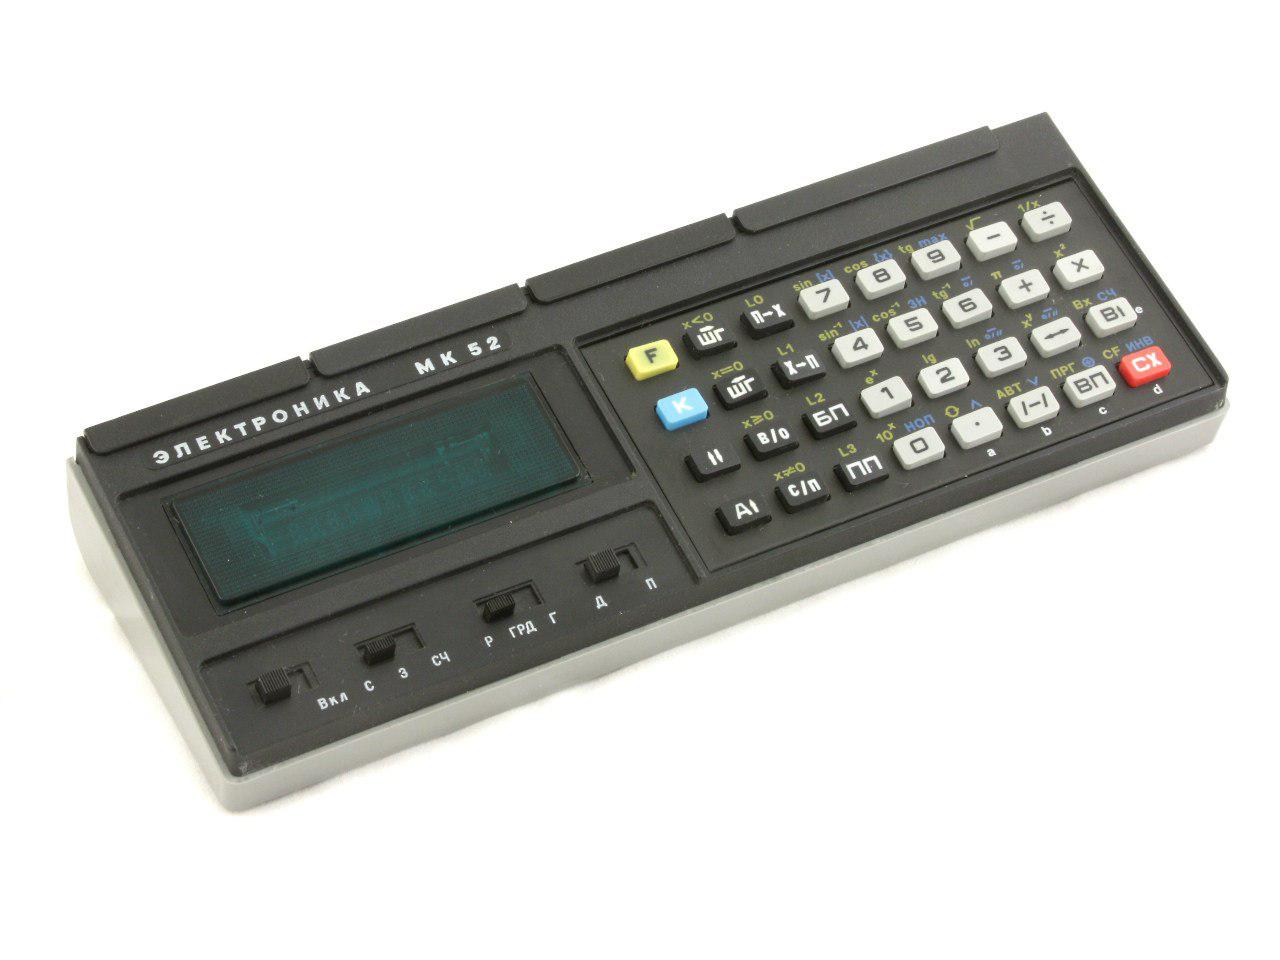 Программируемый калькулятор МК-52